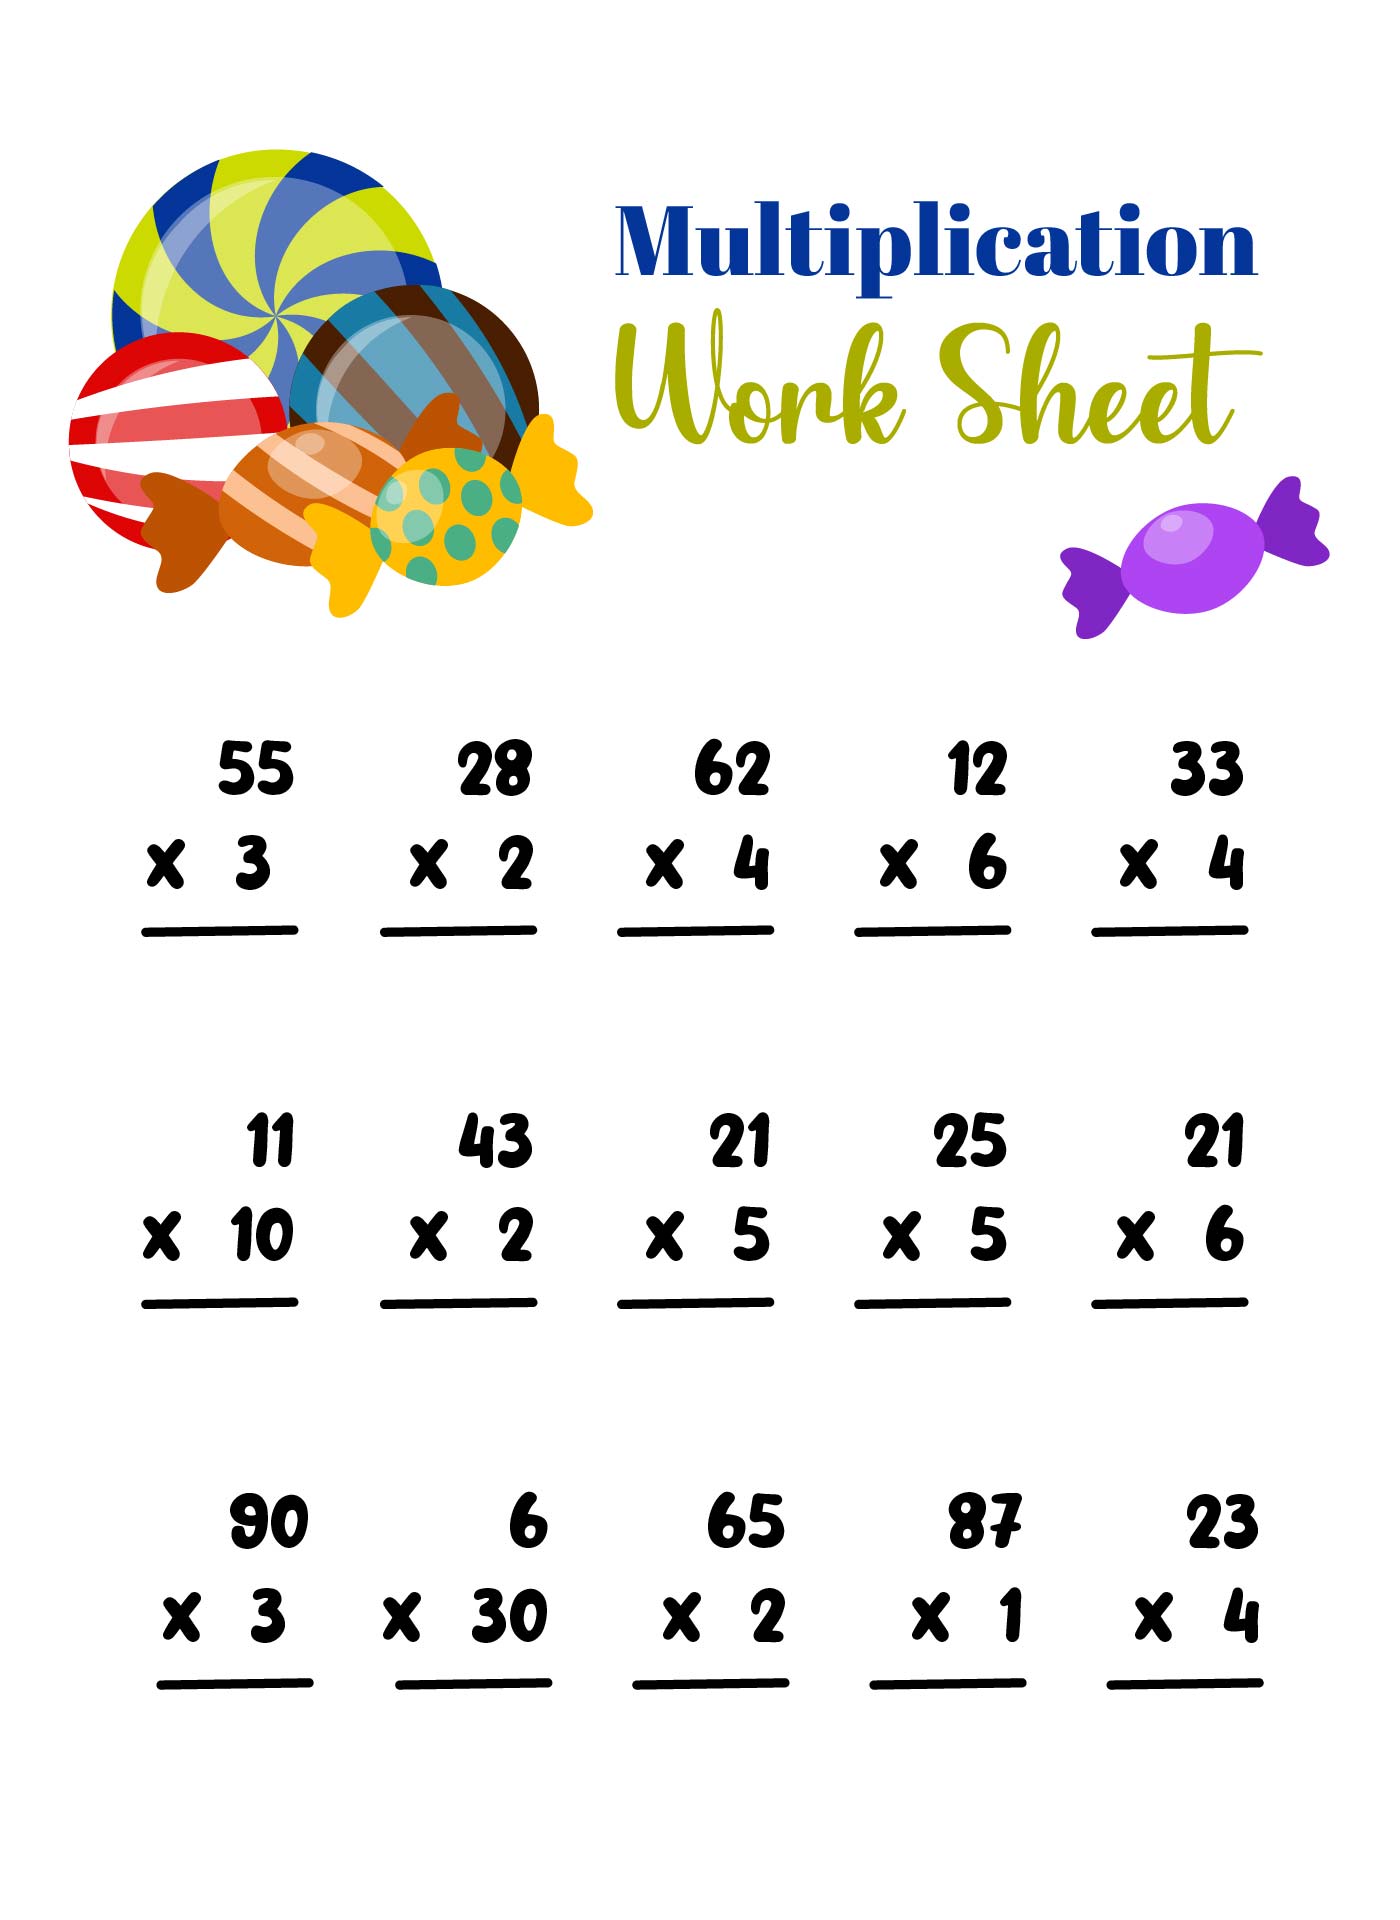 multiplication-facts-printable-multiplication-worksheets-kindergarten-math-worksheets-addition